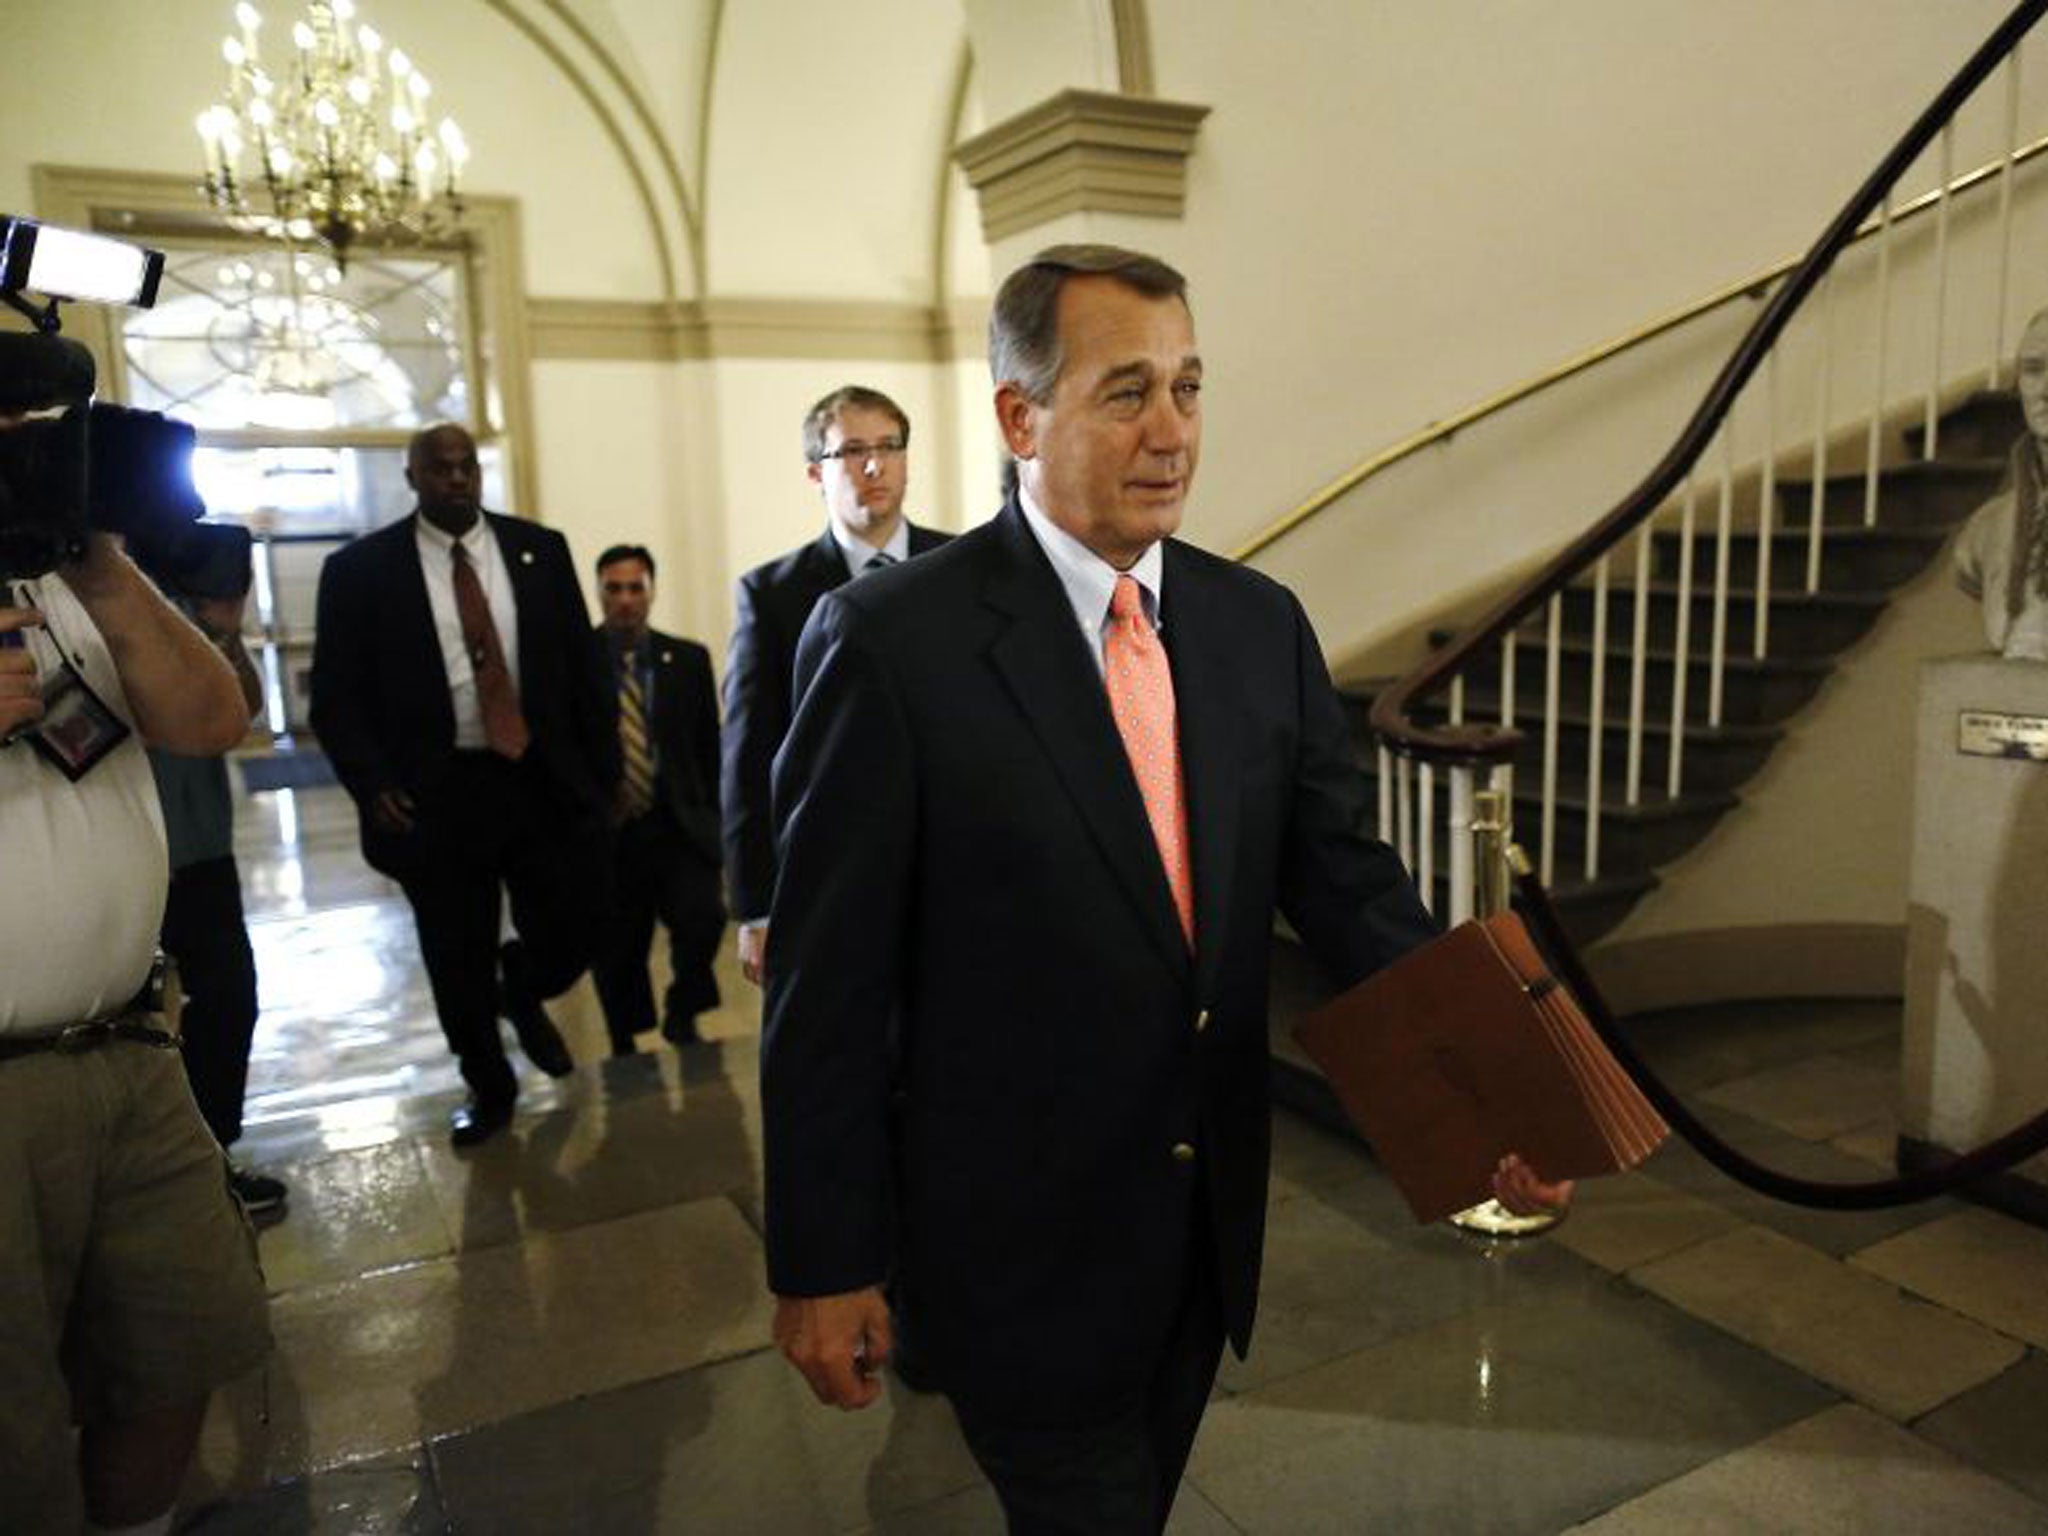 Republican house speaker, John Boehner, has sought put the blame on President Barack Obama